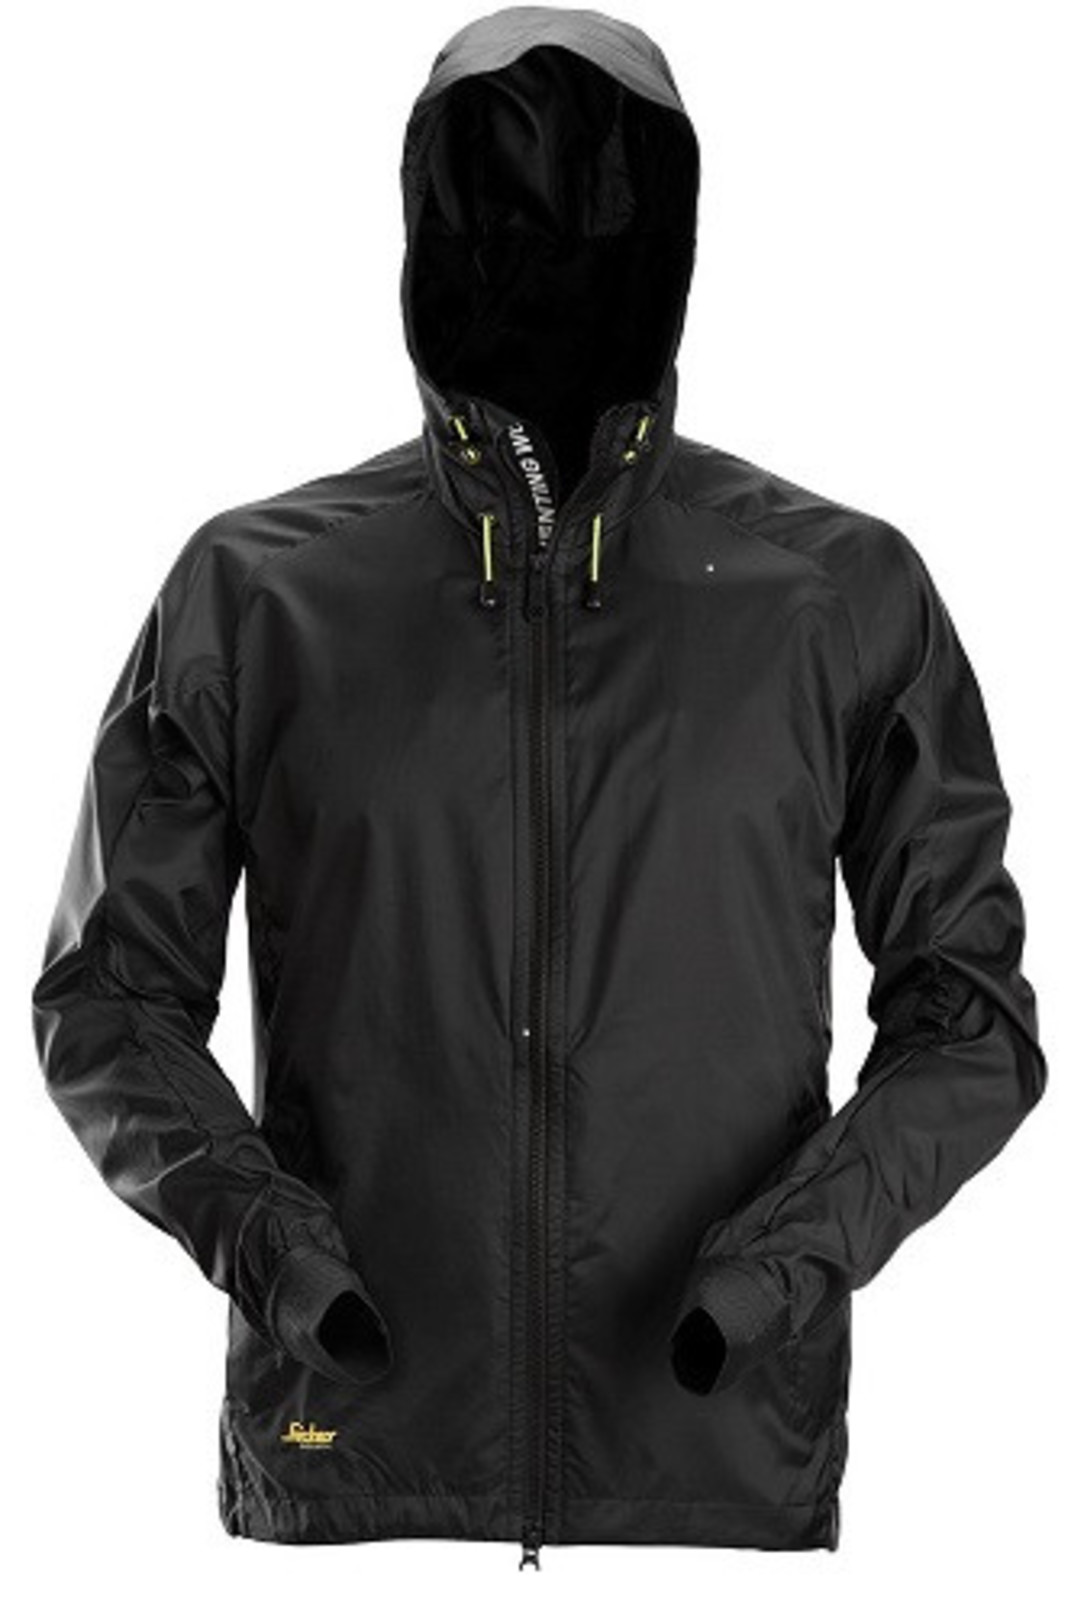 Ľahká bunda proti vetru Snickers® LiteWork Windbreaker - veľkosť: 3XL, farba: čierna